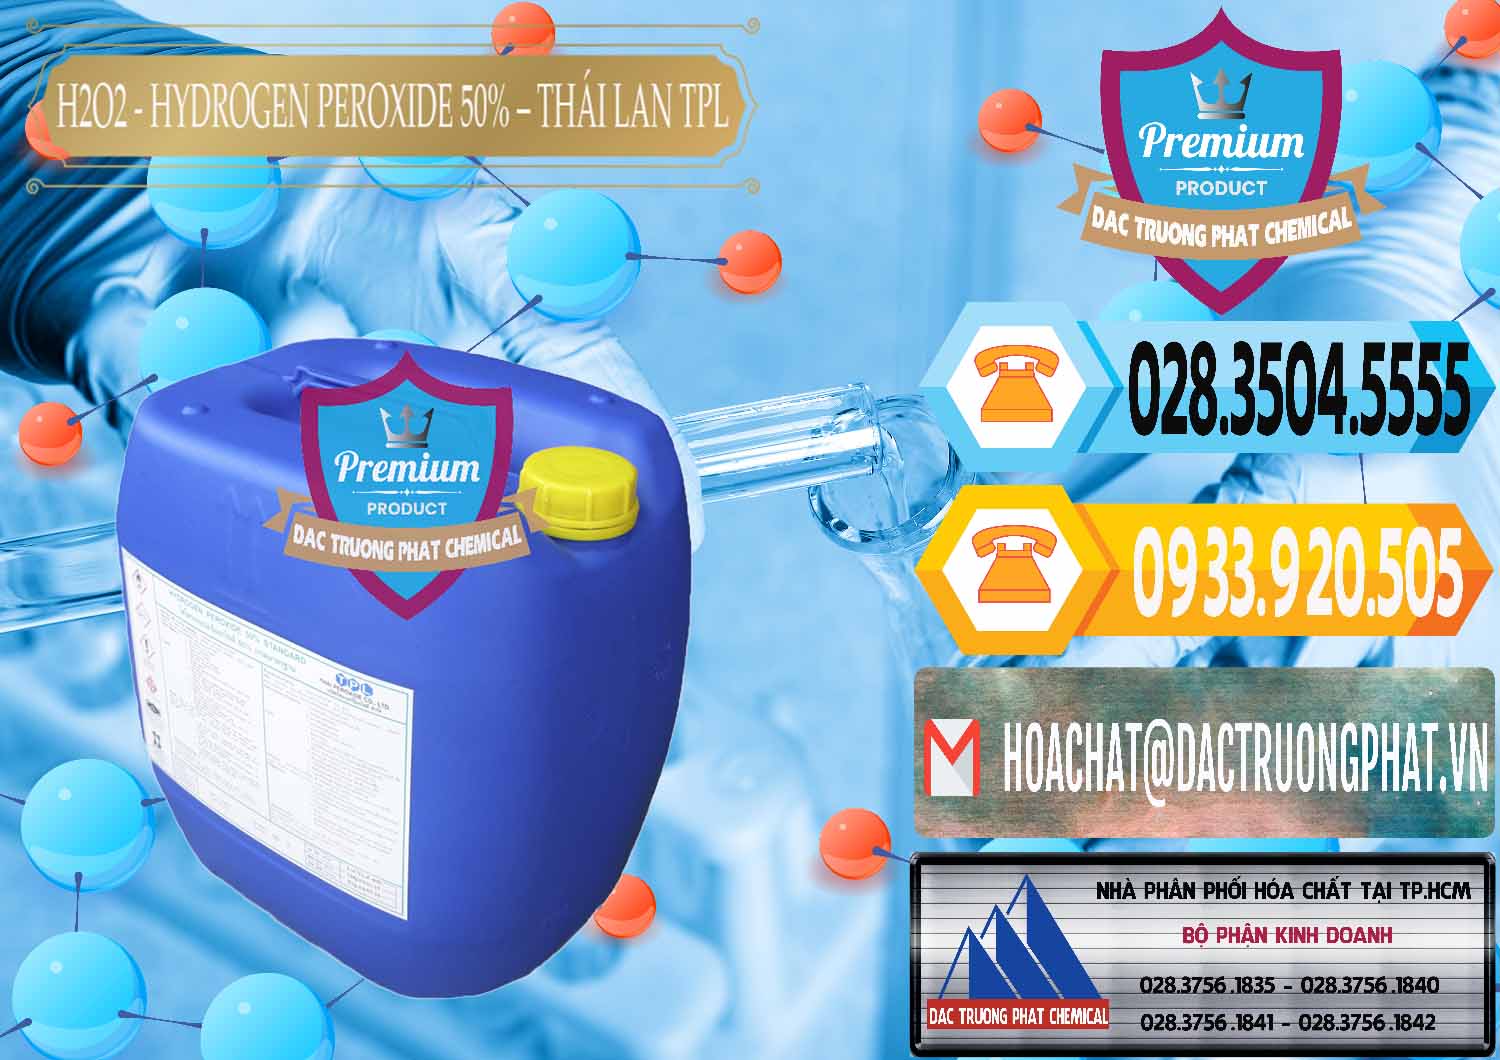 Đơn vị nhập khẩu và bán H2O2 - Hydrogen Peroxide 50% Thái Lan TPL - 0076 - Cty phân phối & cung cấp hóa chất tại TP.HCM - hoachattayrua.net